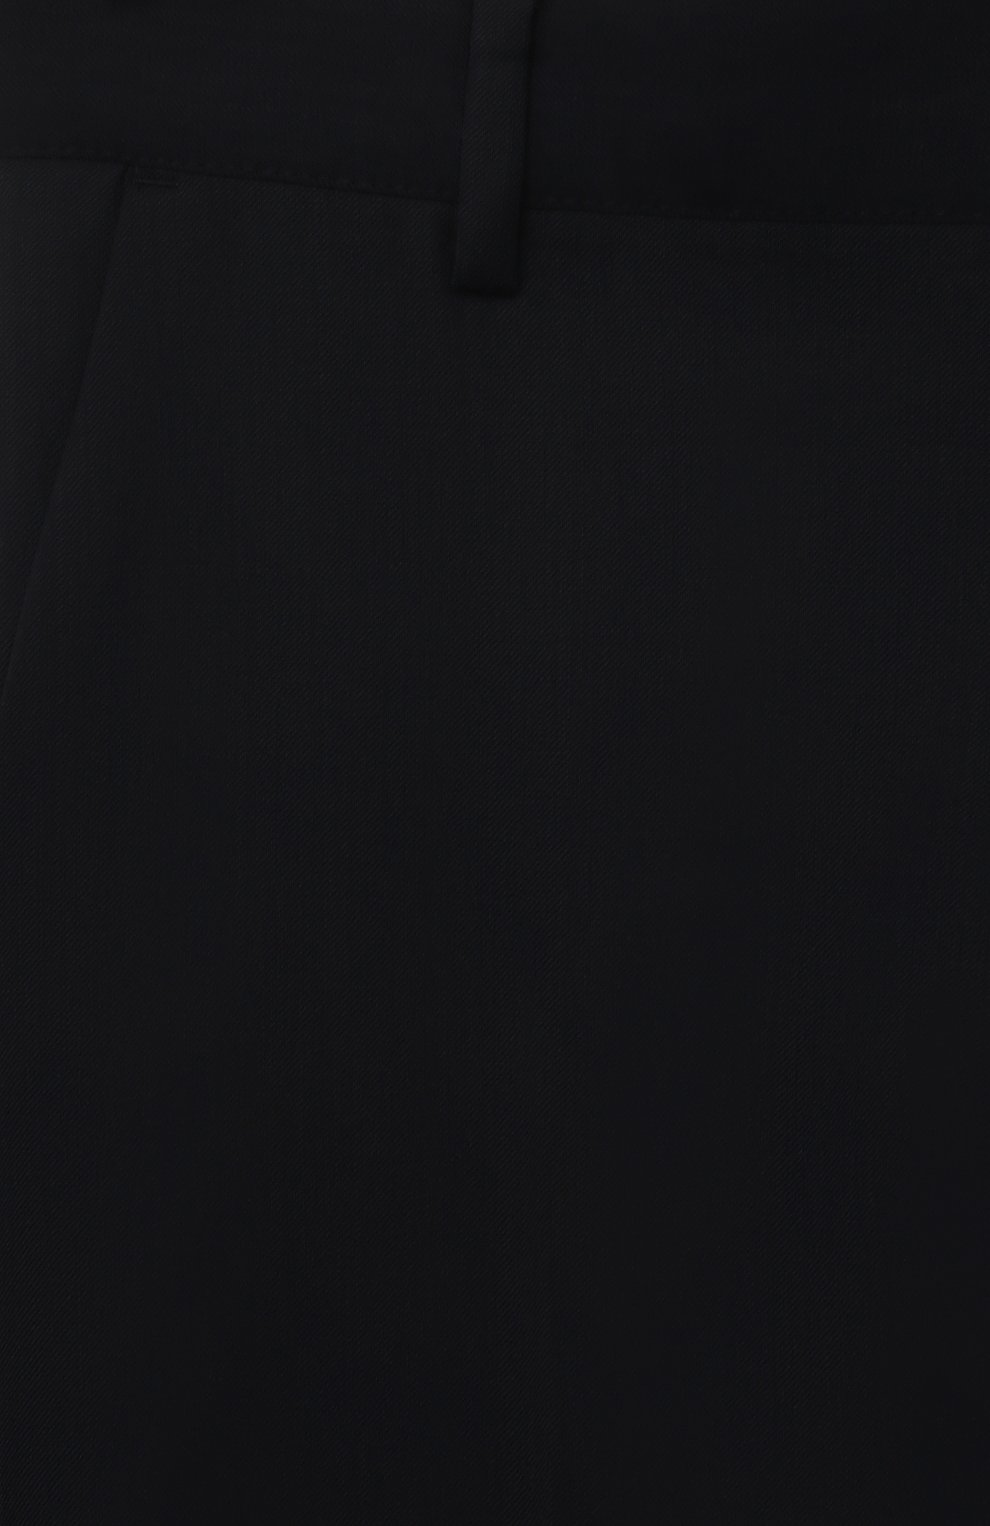 Детские шерстяные брюки EMPORIO ARMANI синего цвета, арт. 8N4P10/4N5IZ | Фото 3 (Материал внешний: Шерсть; Мальчики-школьная форма: Брюки; Стили: Классический; Материал подклада: Вискоза; Мальчики Кросс-КТ: Брюки-одежда; Ростовка одежда: 10 - 11 лет | 140 - 146см, 13 - 15 лет | 158 см, 4 года | 104 см, 5 лет | 110 см, 6 лет | 116 см, 7 лет | 122 см, 8 лет | 128 см, 9 лет | 134 см; Региональные ограничения белый список (Axapta Mercury): 16 лет | 164 см)